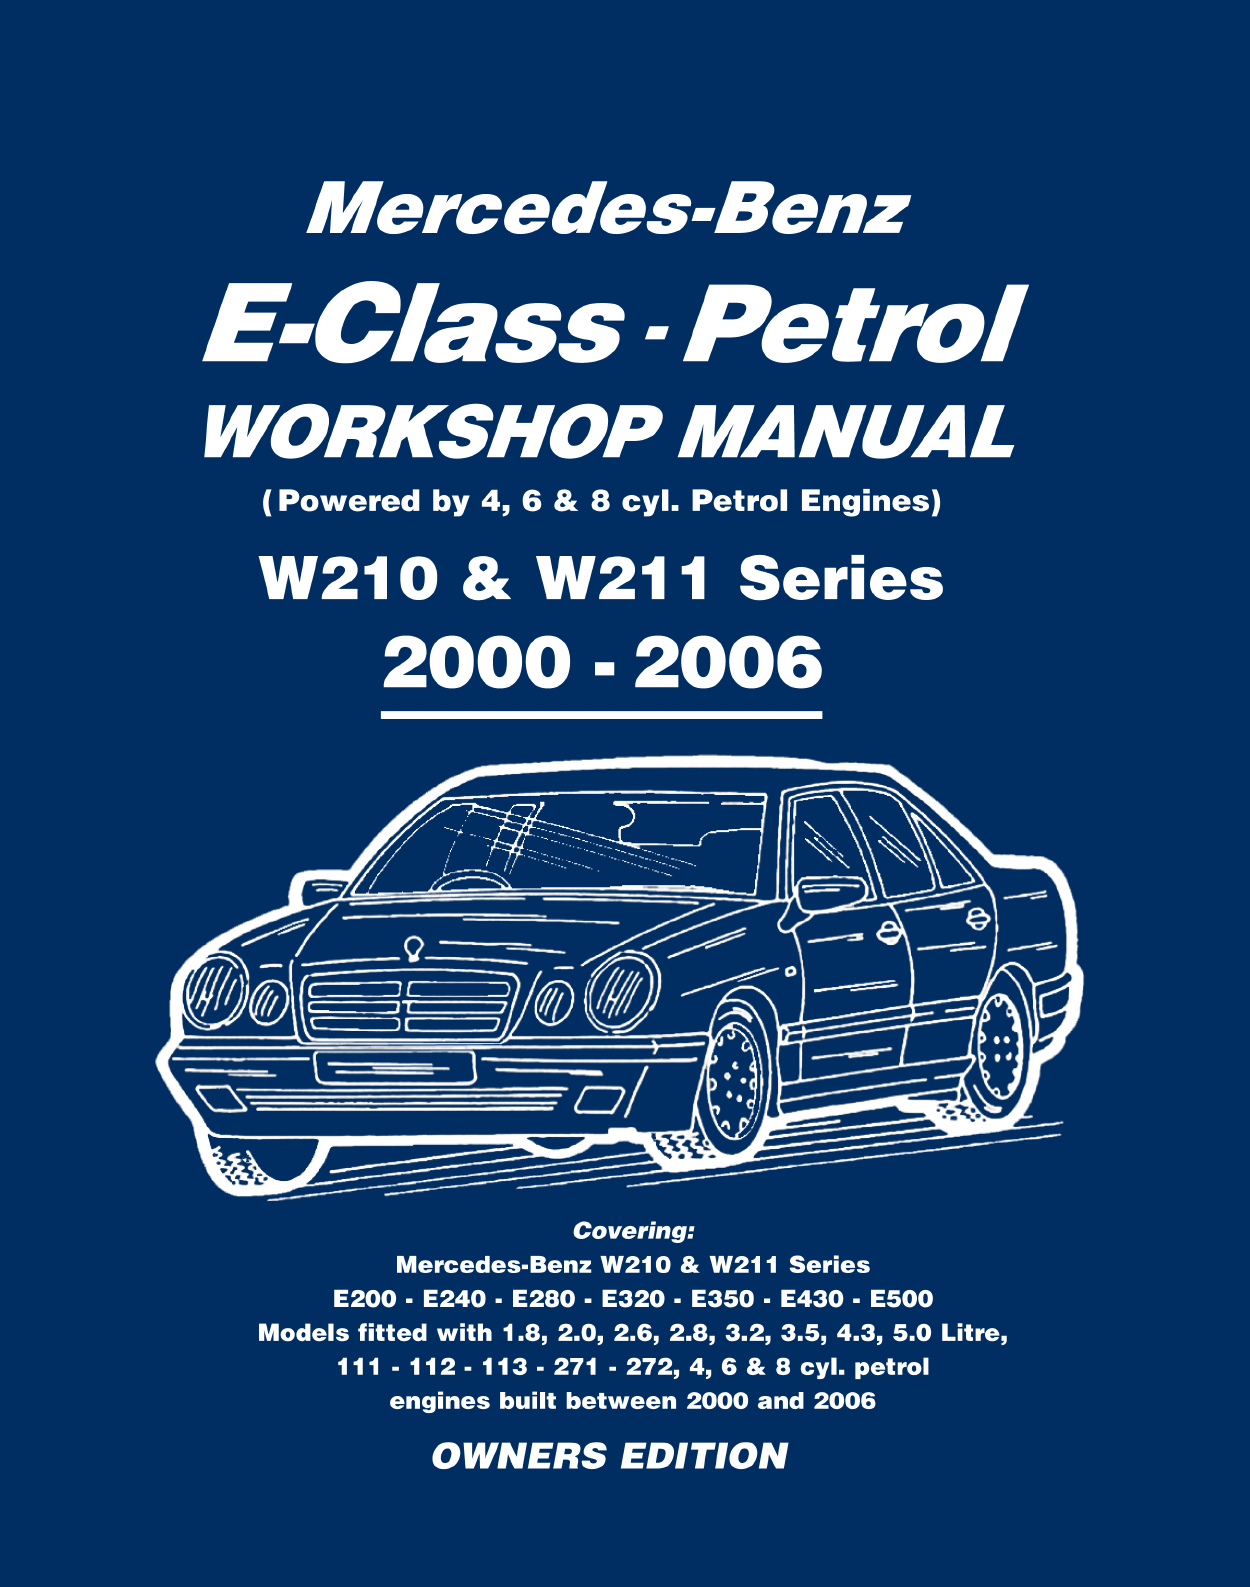 W211 Workshop Manual